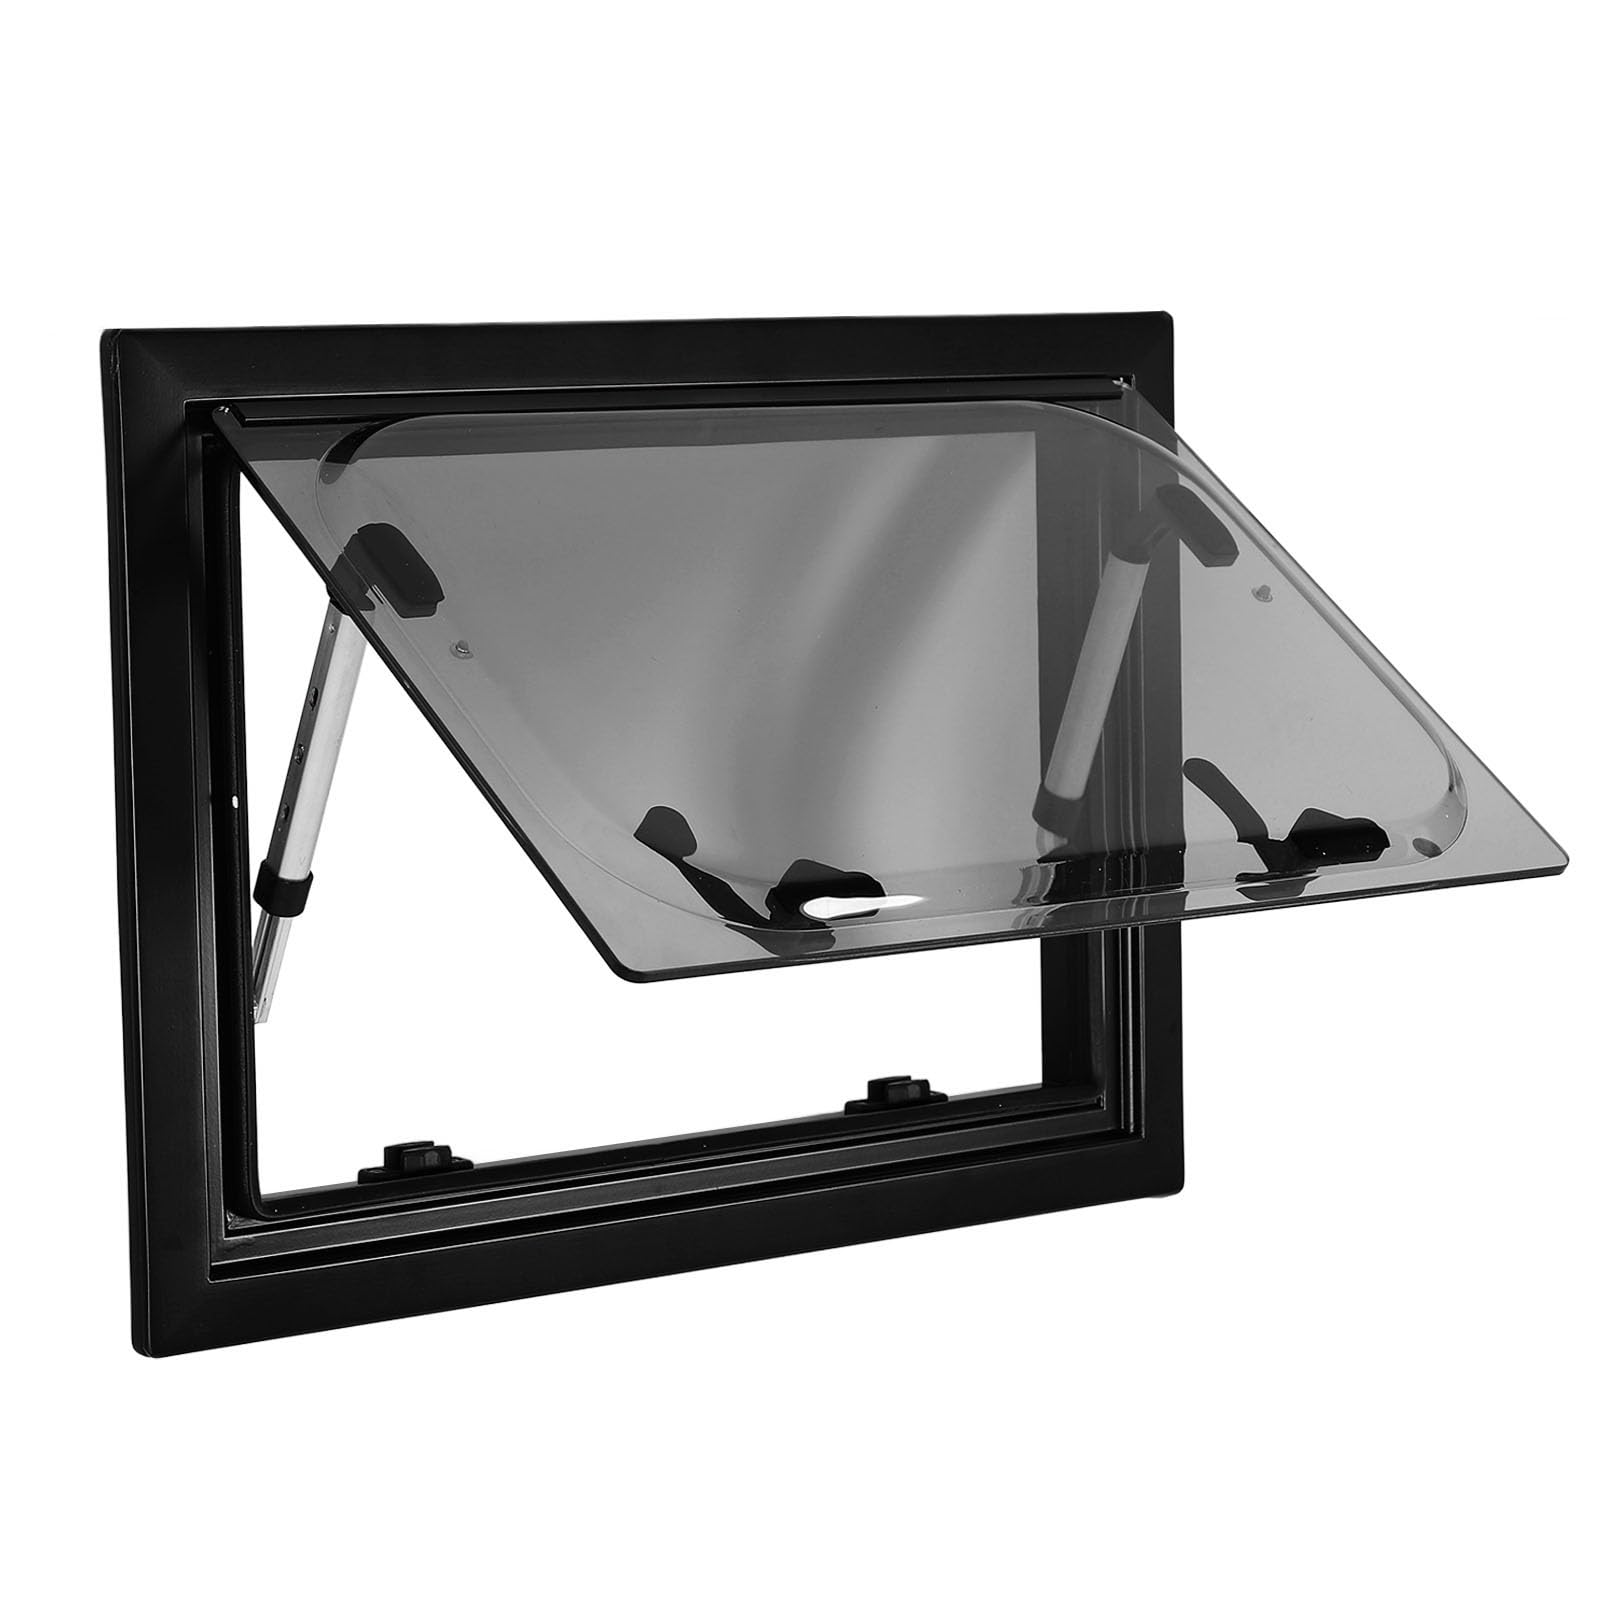 Asixxsix RV Fenster, 400 x 300mm RV Ausstiegsfenster Doppellagiges UV-geschütztes RV Ausstiegsfenster, vielseitiges Camper Fenster mit Schirm, Sonnenschutz, für RV Camper Trailer Van von Asixxsix